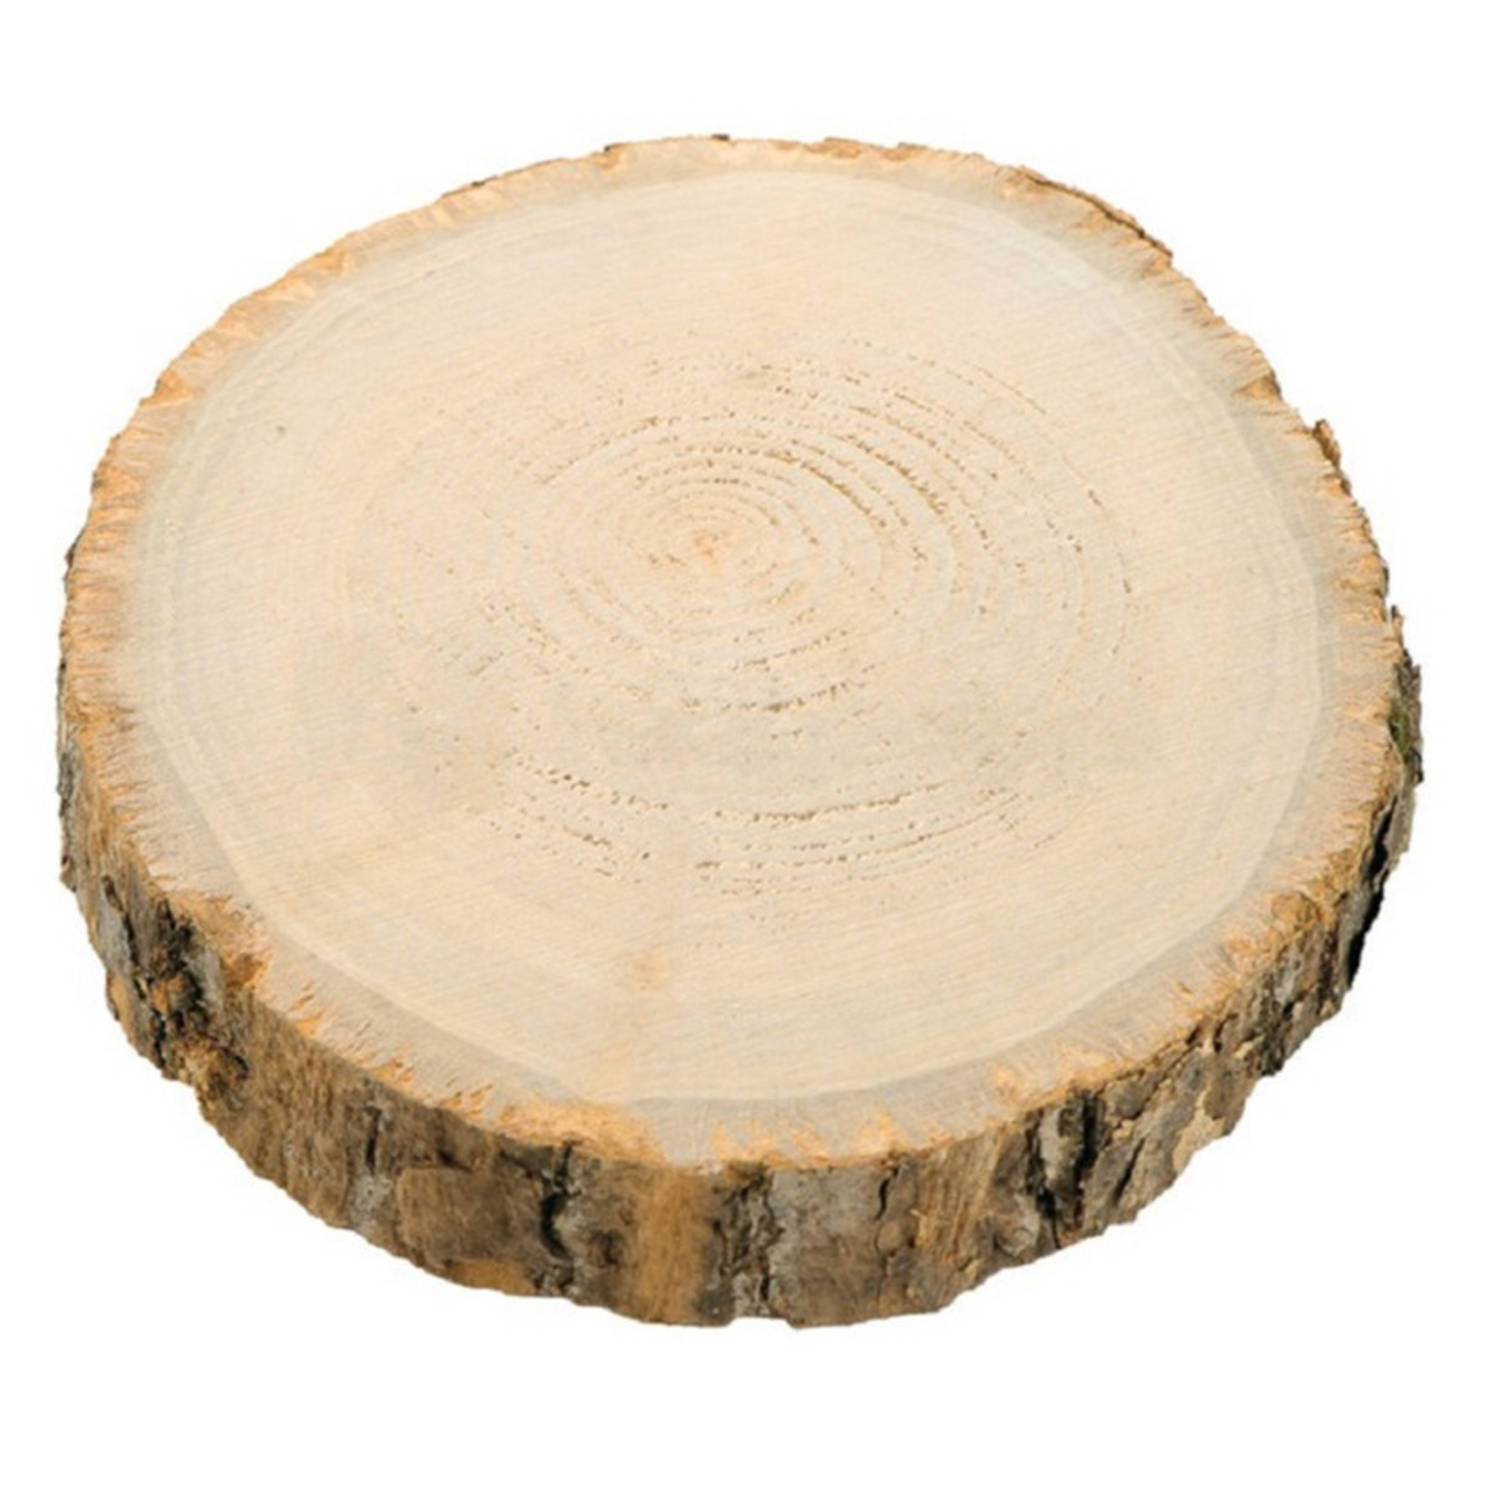 Chaks Kaarsenplateau boomschijf met schors hout D17 x H2 cm rond Kaarsenplateaus